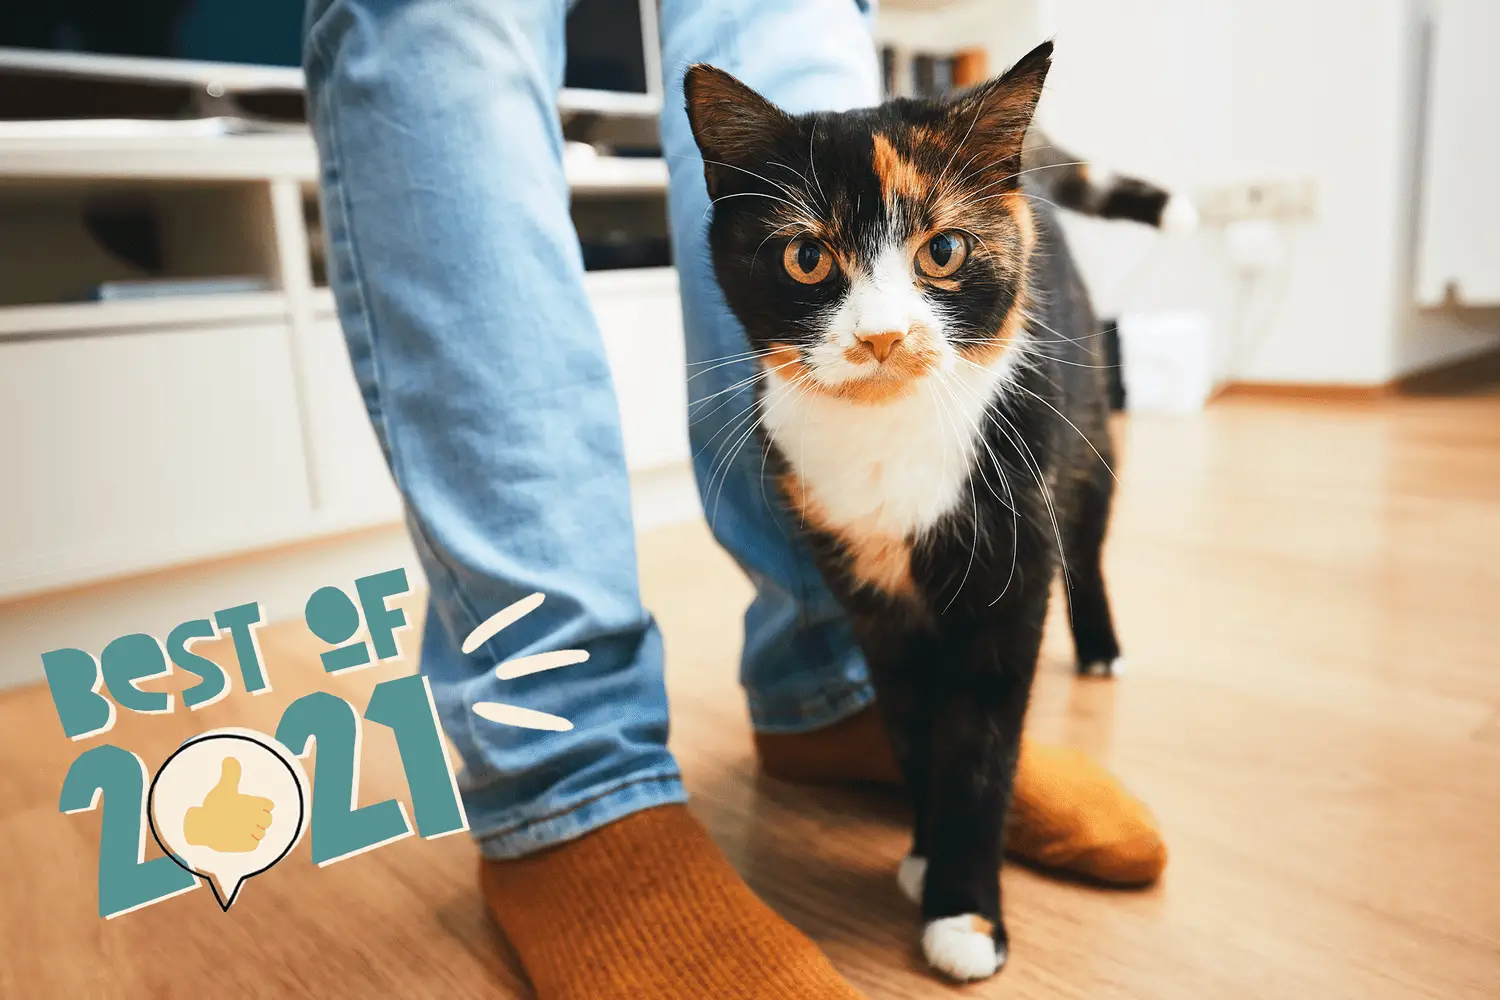 gatto che si sfrega contro la gamba di una persona - i migliori nomi di gatti del 2021